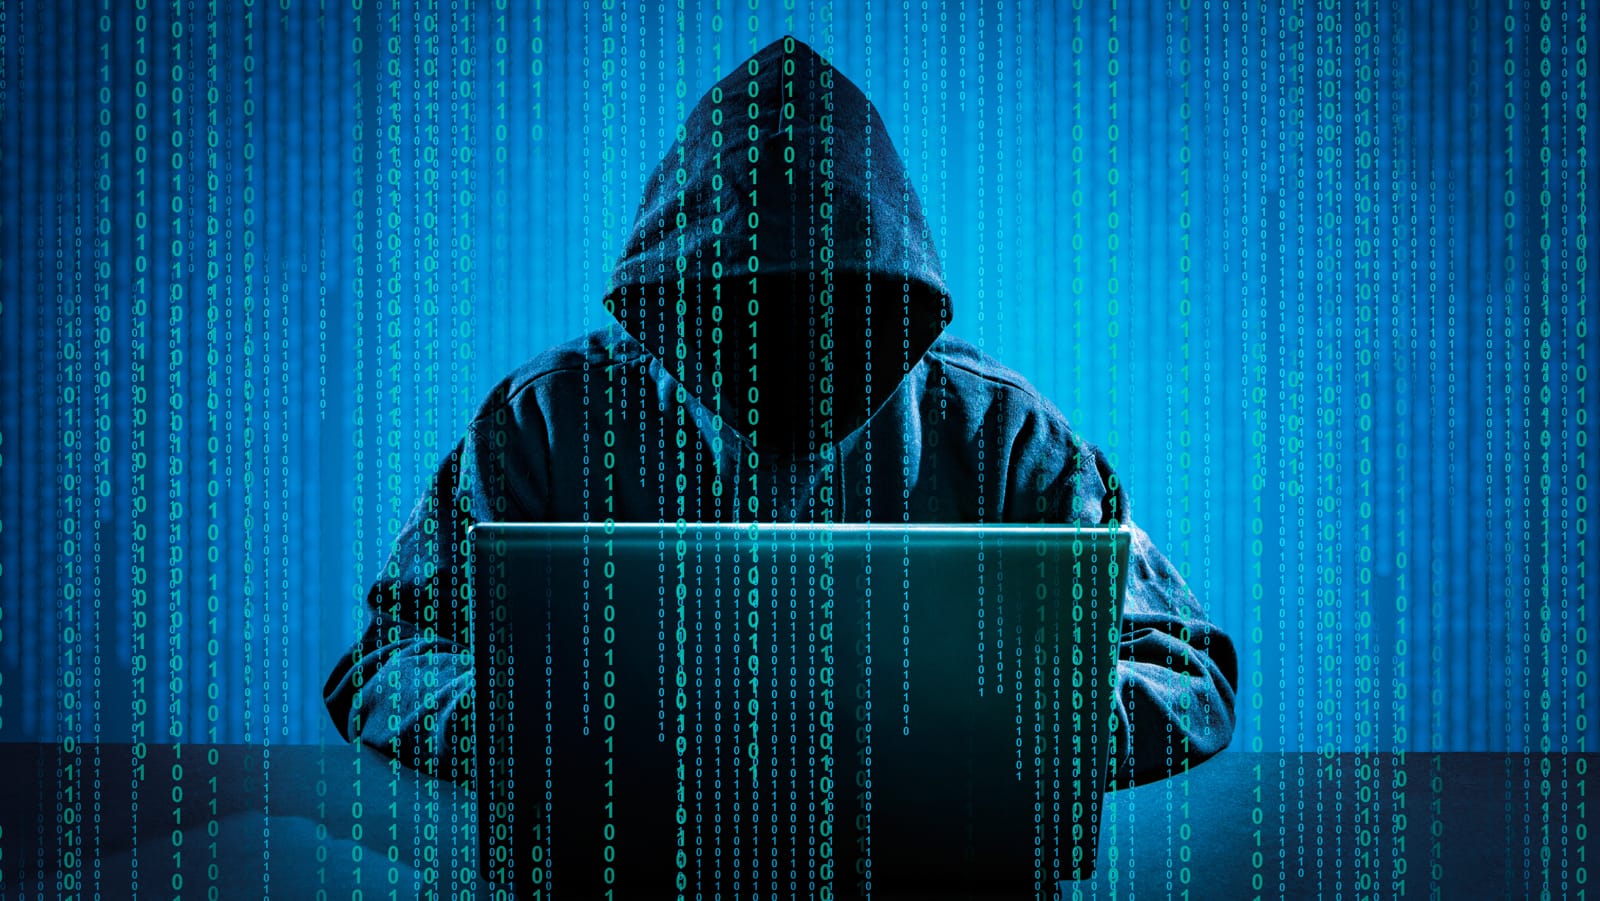 Hacker in a hooded sweatshirt using a laptop